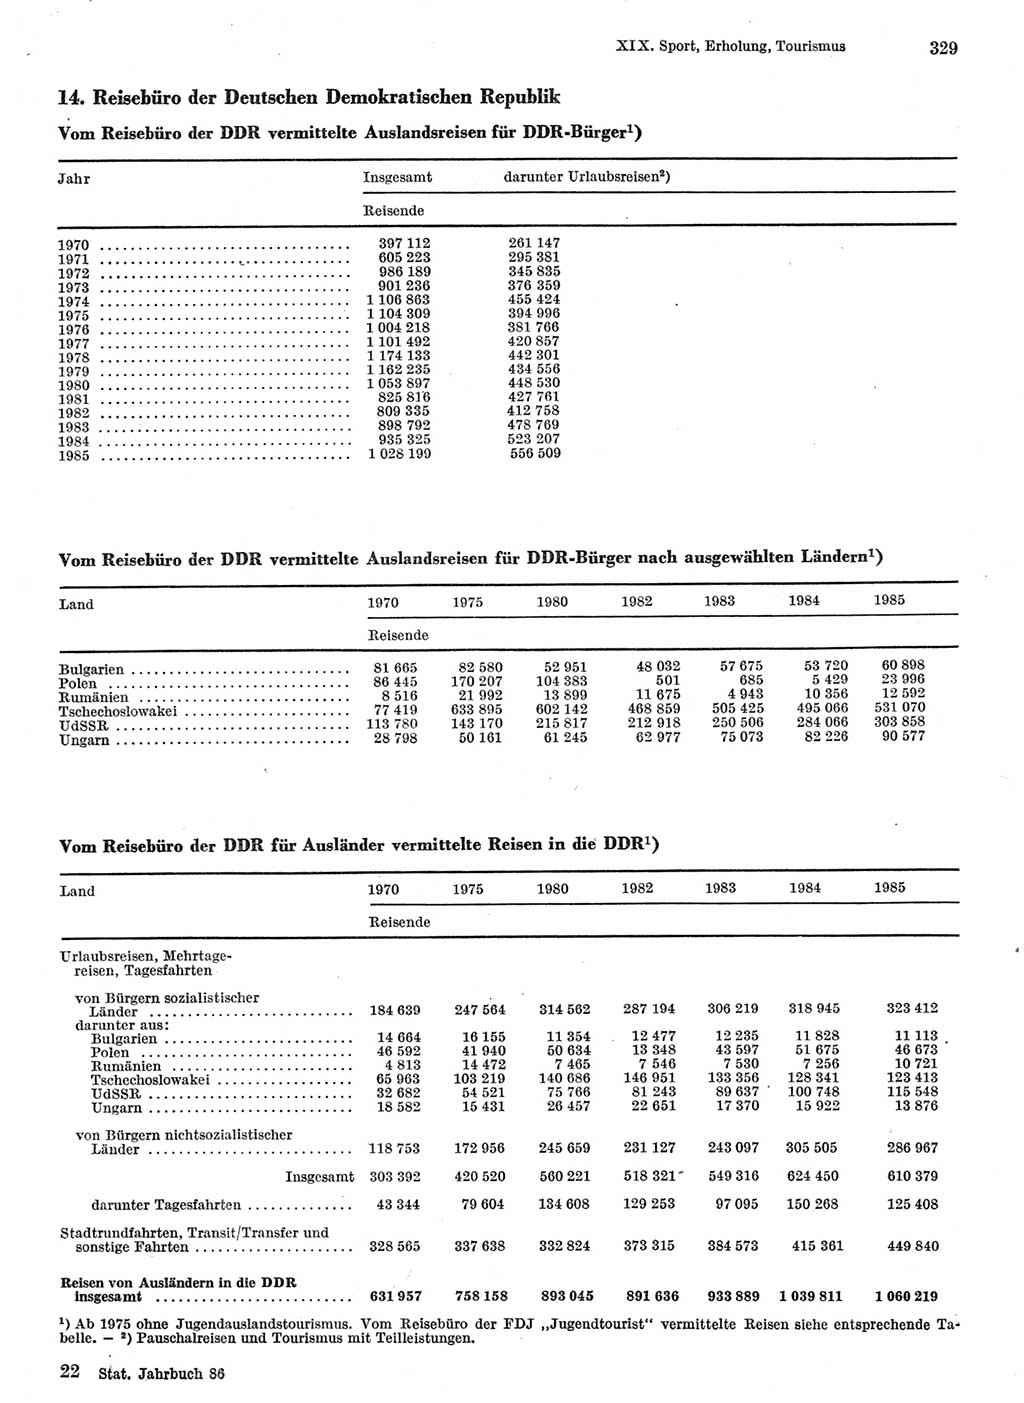 Statistisches Jahrbuch der Deutschen Demokratischen Republik (DDR) 1986, Seite 329 (Stat. Jb. DDR 1986, S. 329)